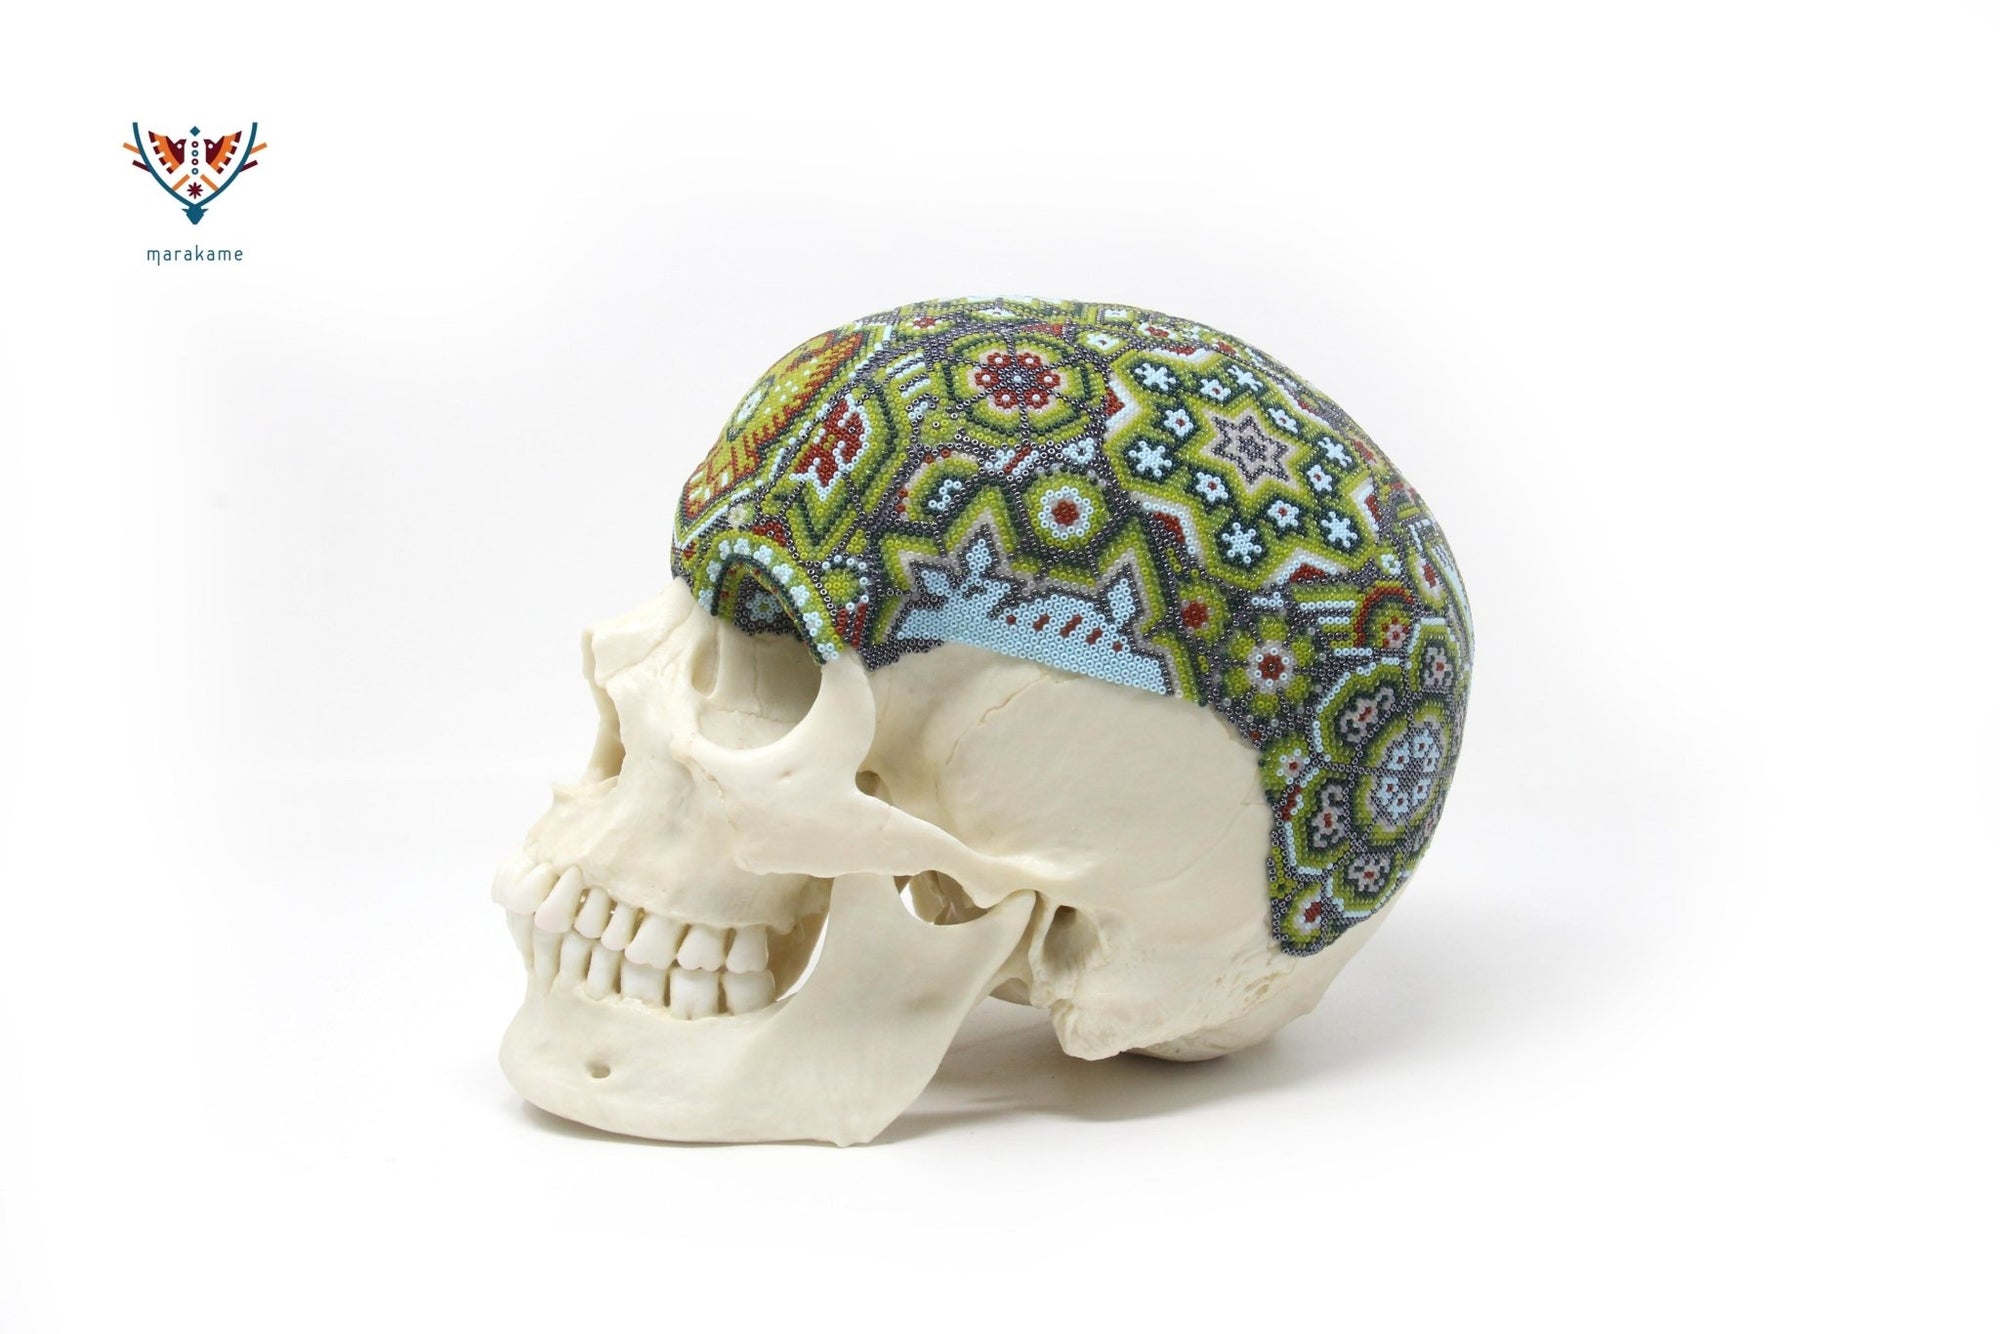 Crâne humain hyperréaliste "Hauxamanaka" - Art Huichol - Marakame